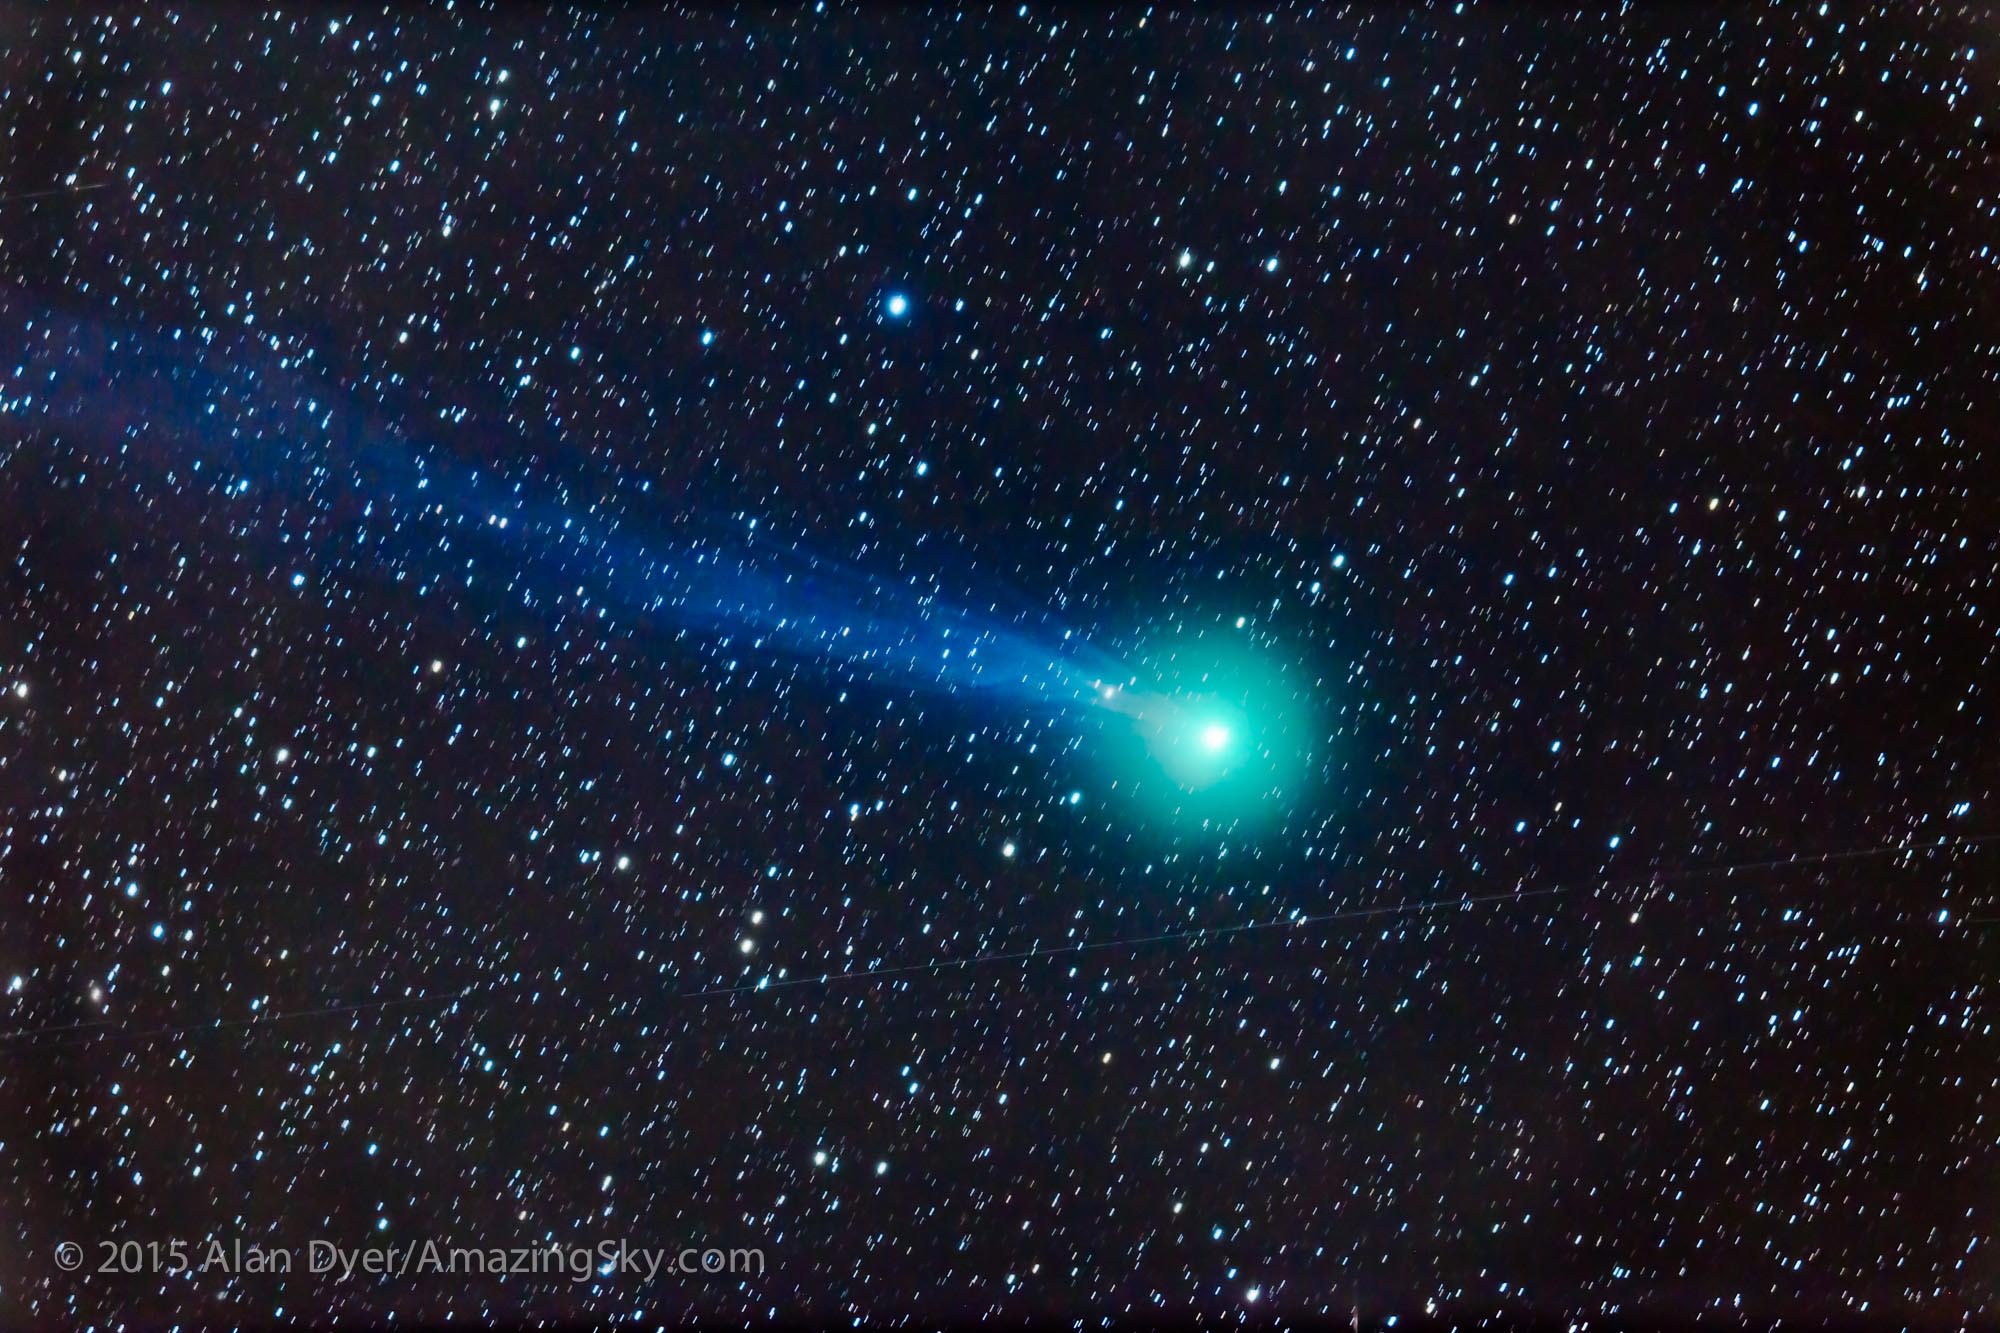 Images of Comet | 2000x1333